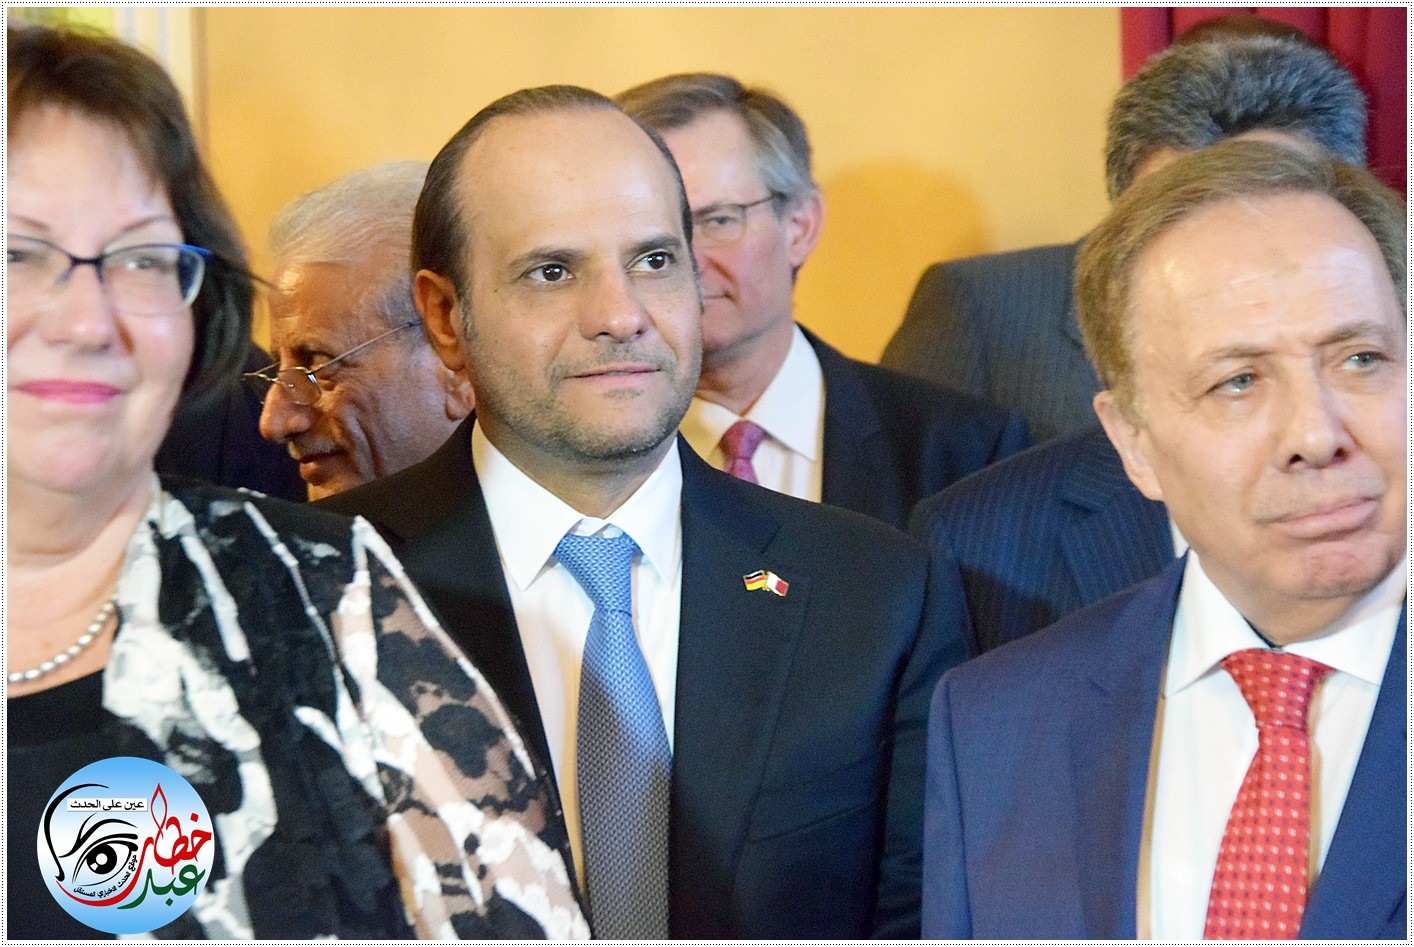 سفير جمهورية العراق ضياء هادي محمود الدباس والشيخ سعود بن عبدالرحمن آل ثاني سفير دولة قطر لدى ألمانيا